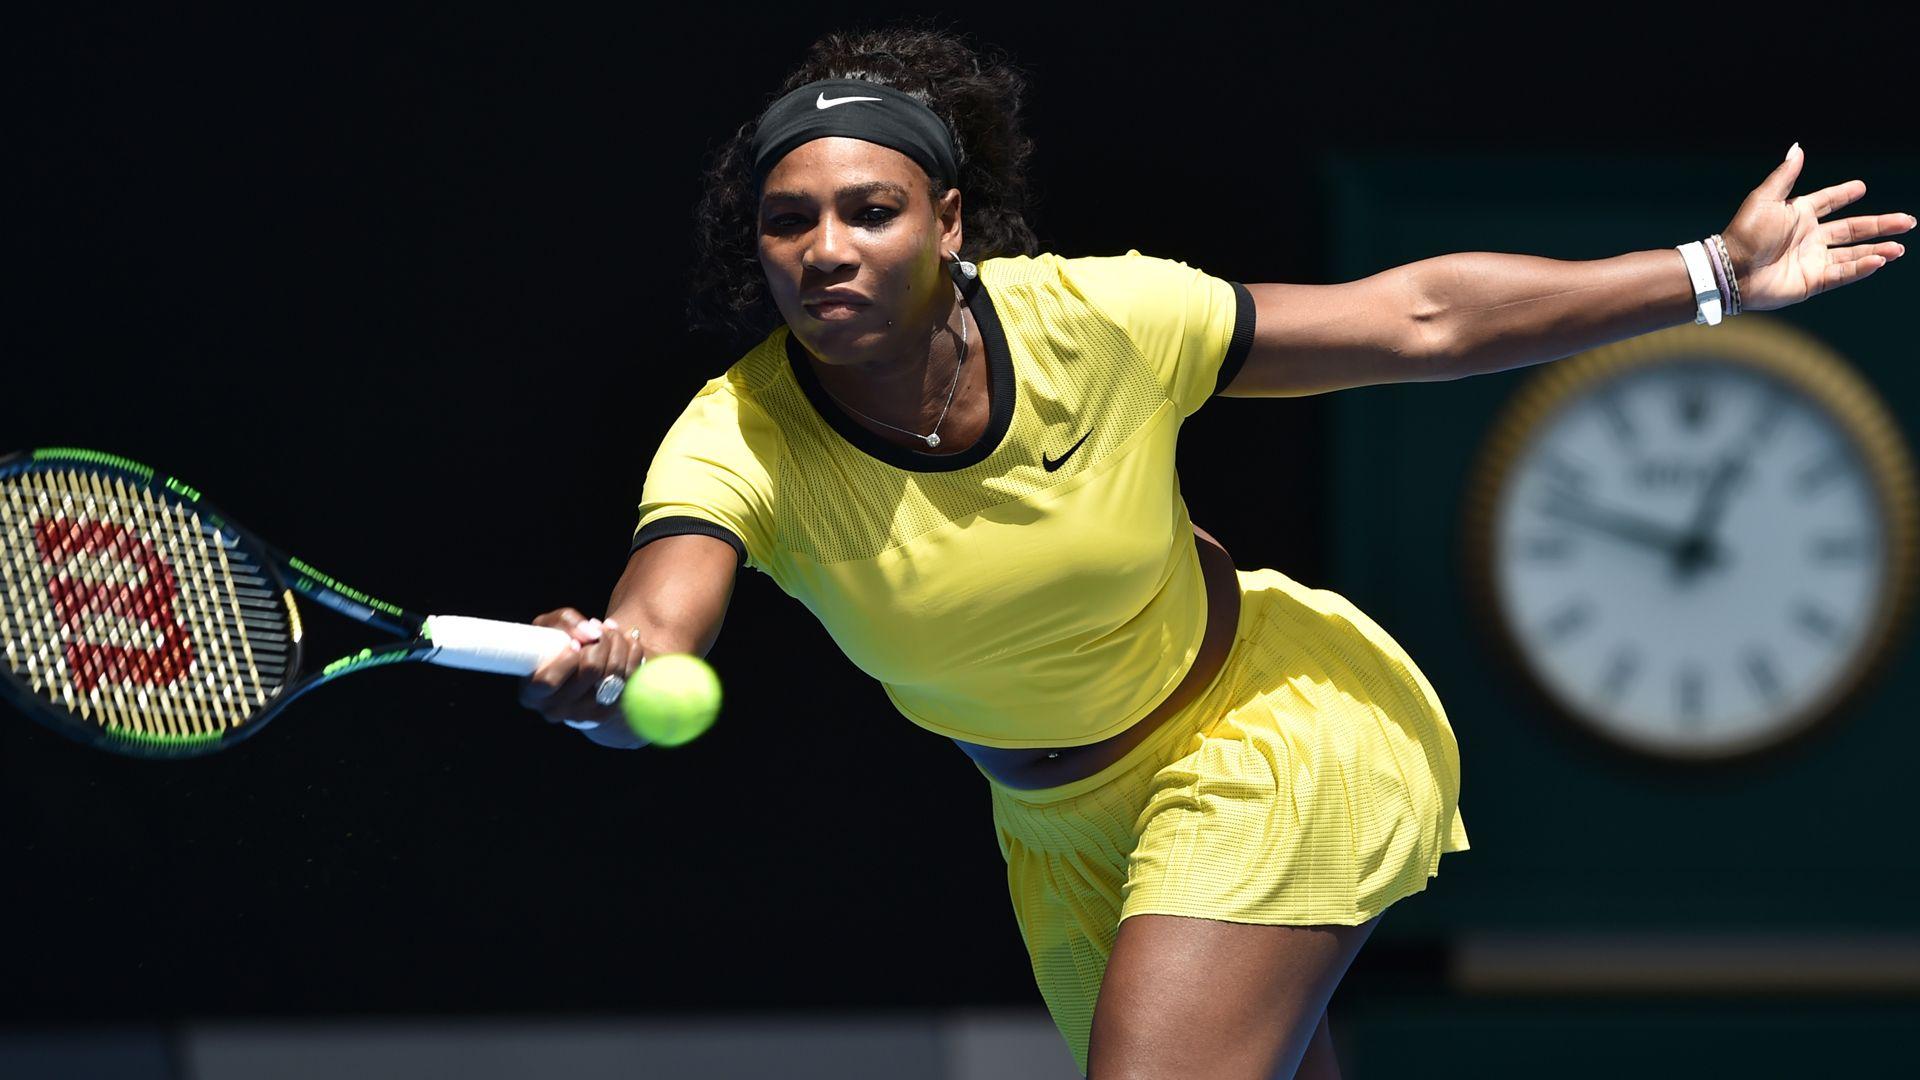 Australian Open 2016: Serena Williams overcomes Camila Giorgi